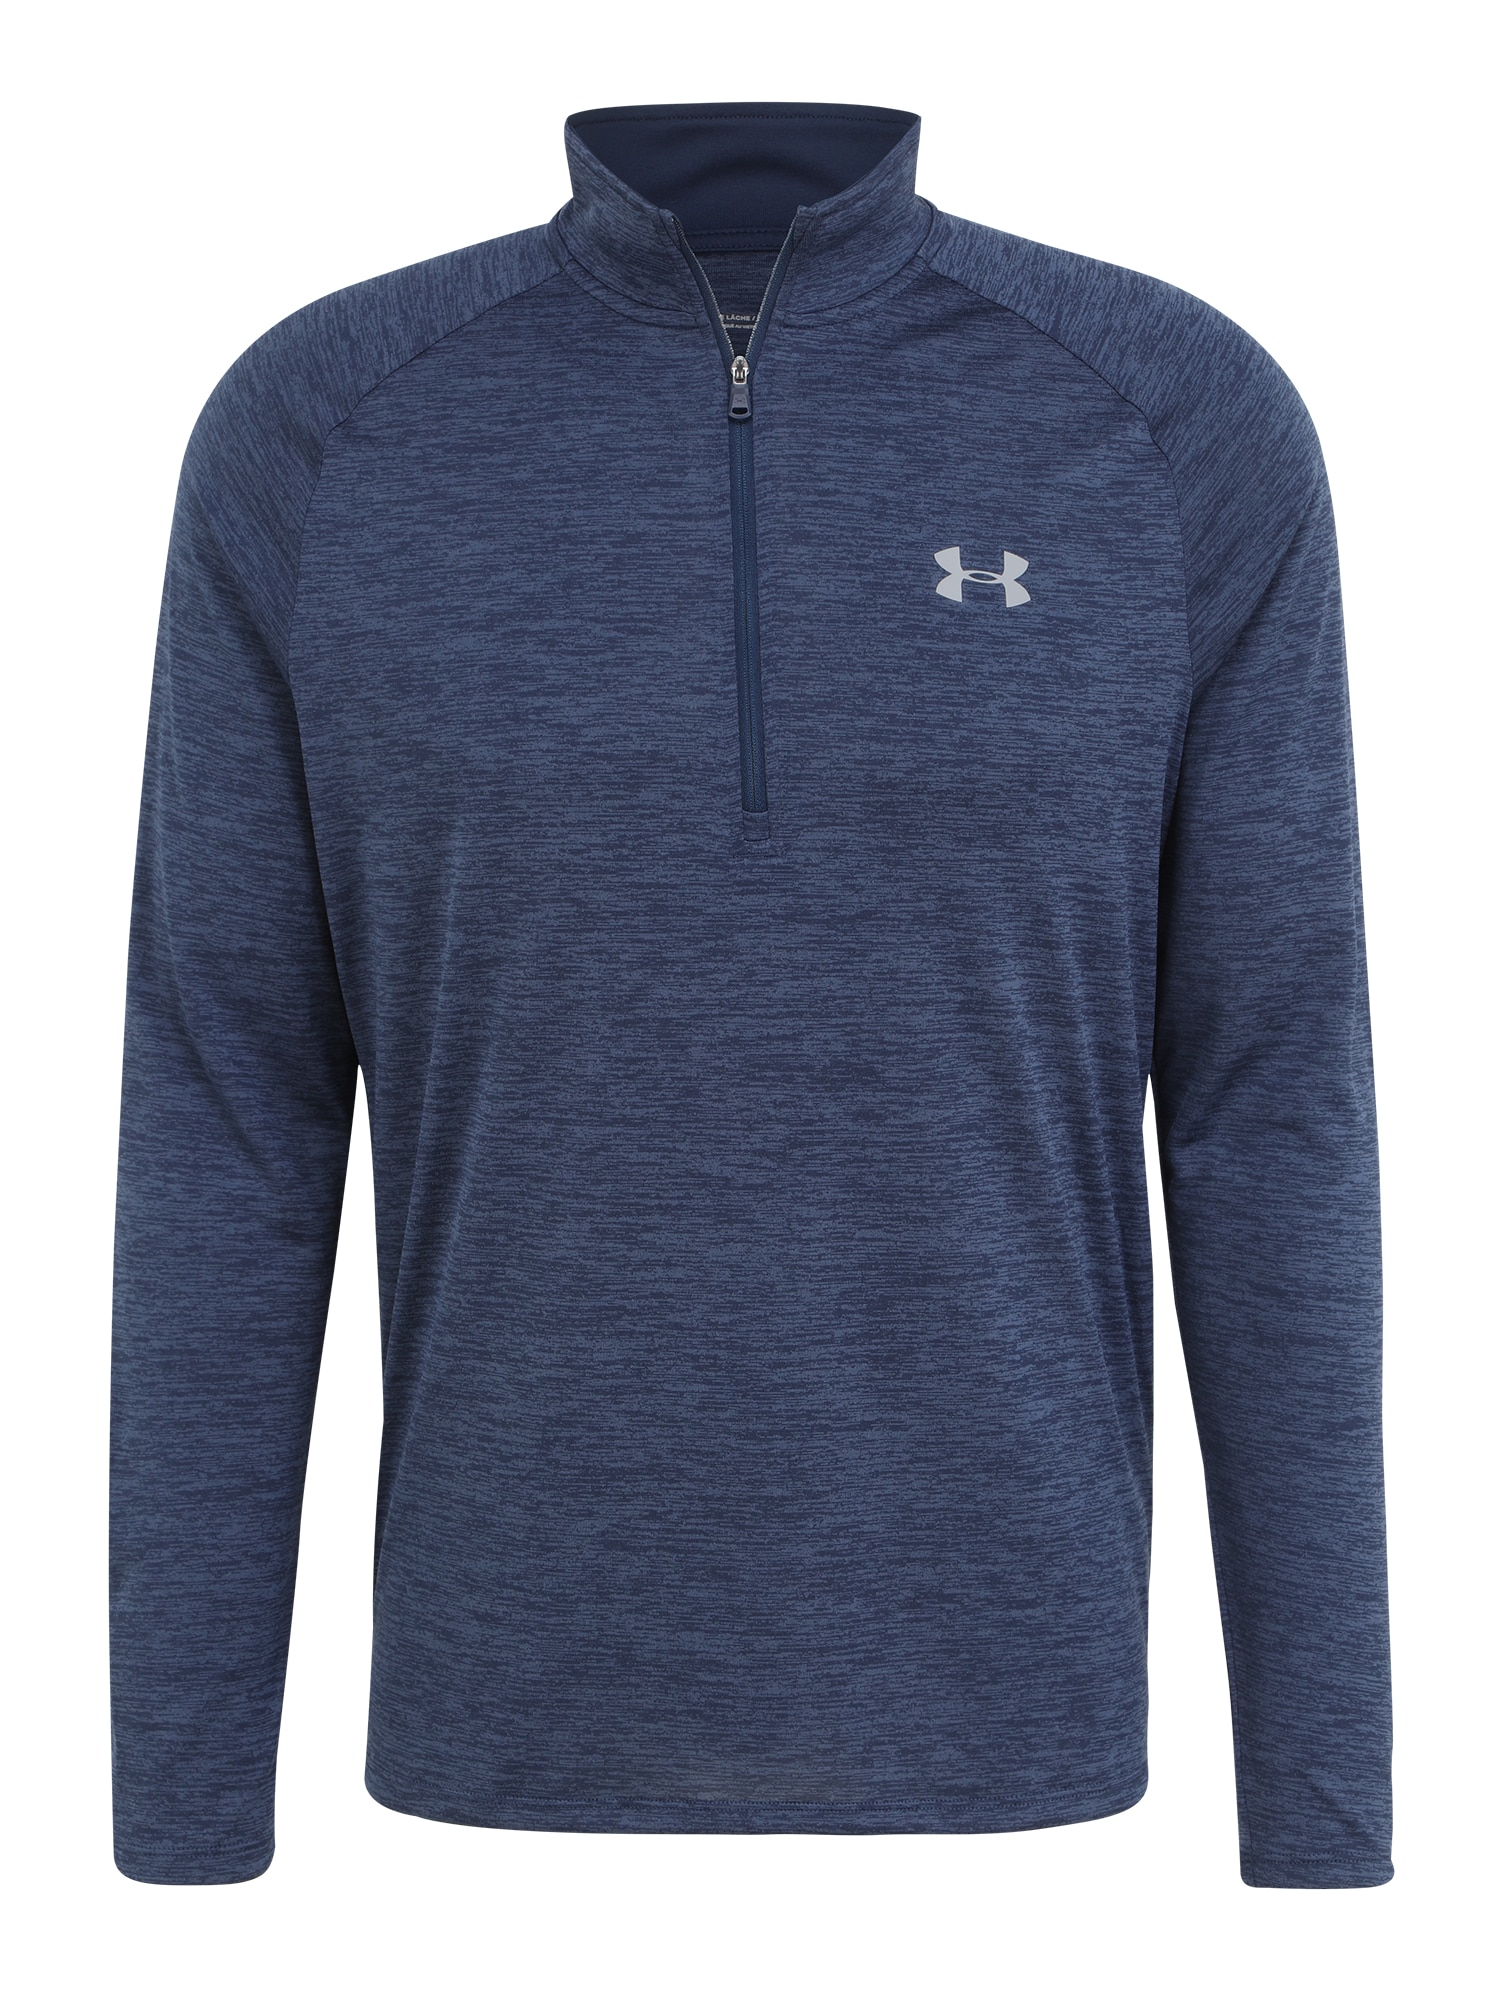 UNDER ARMOUR Sportiniai marškinėliai 'Tech 2.0' tamsiai mėlyna jūros spalva / melsvai pilka / šviesiai pilka